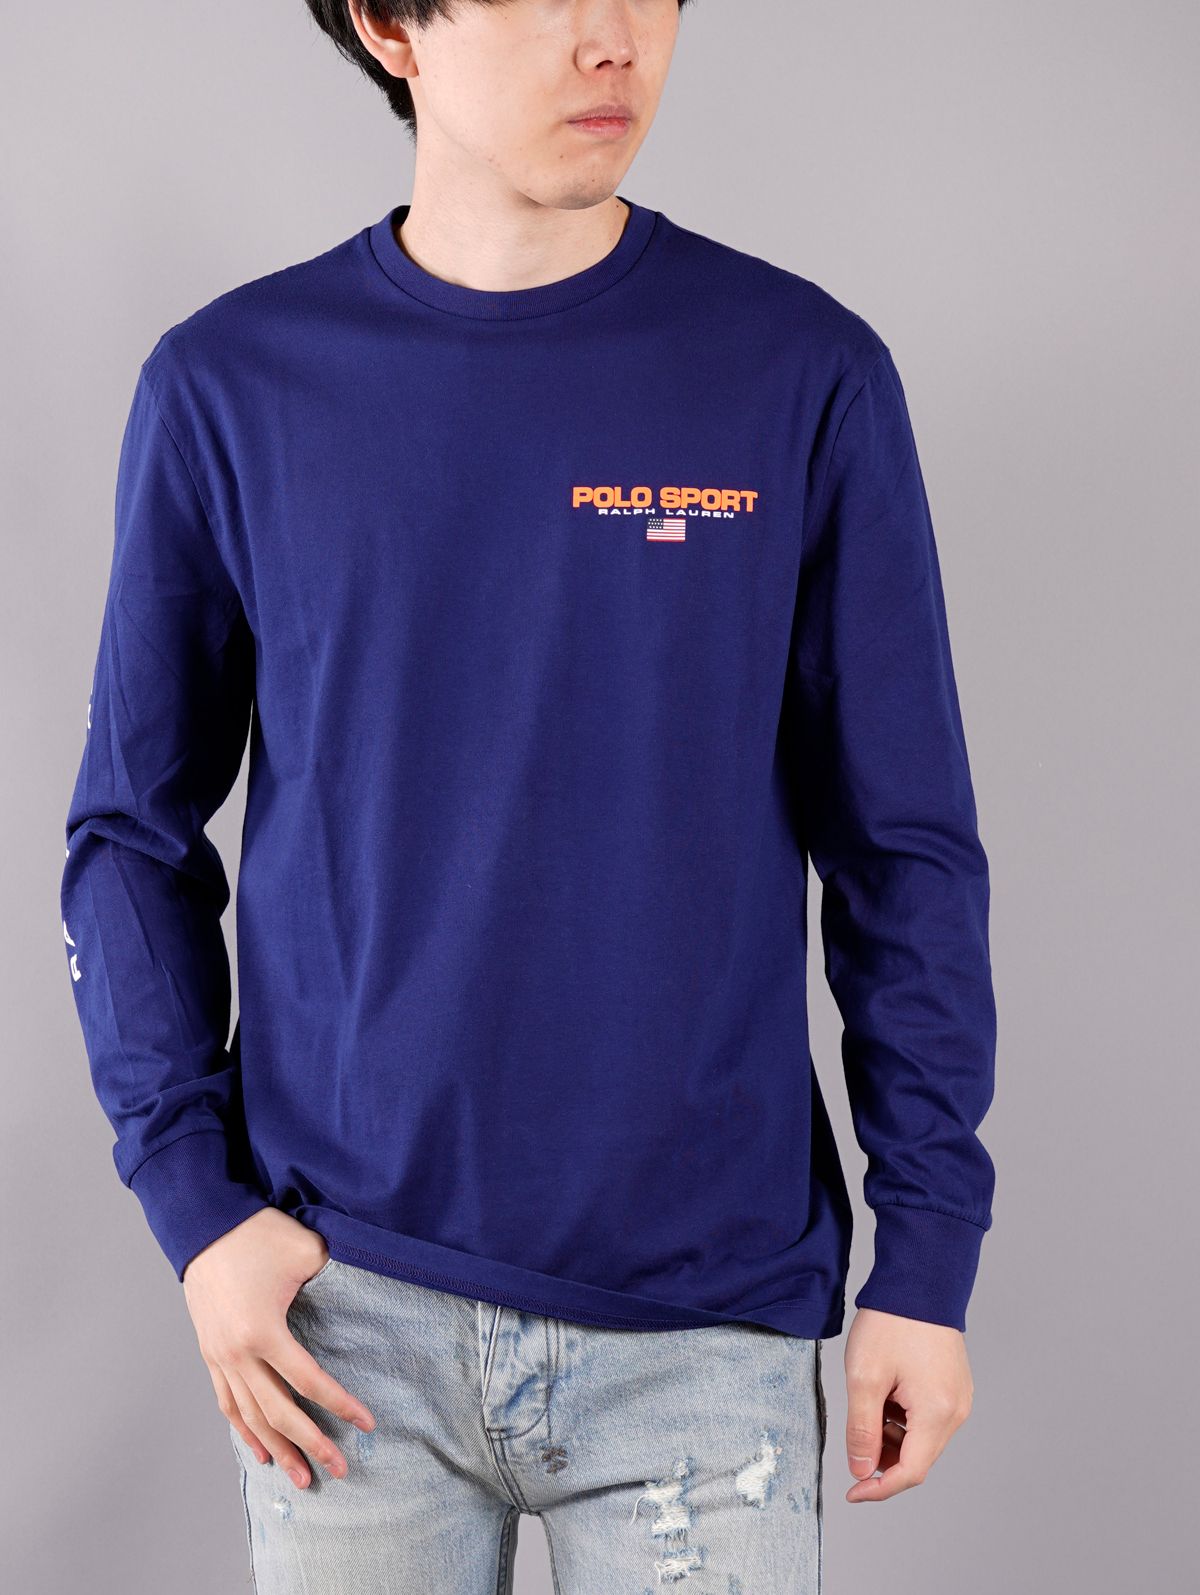 Polo Ralph Lauren - L/S T-SHIRTS / ロングスリーブTシャツ (ブルー